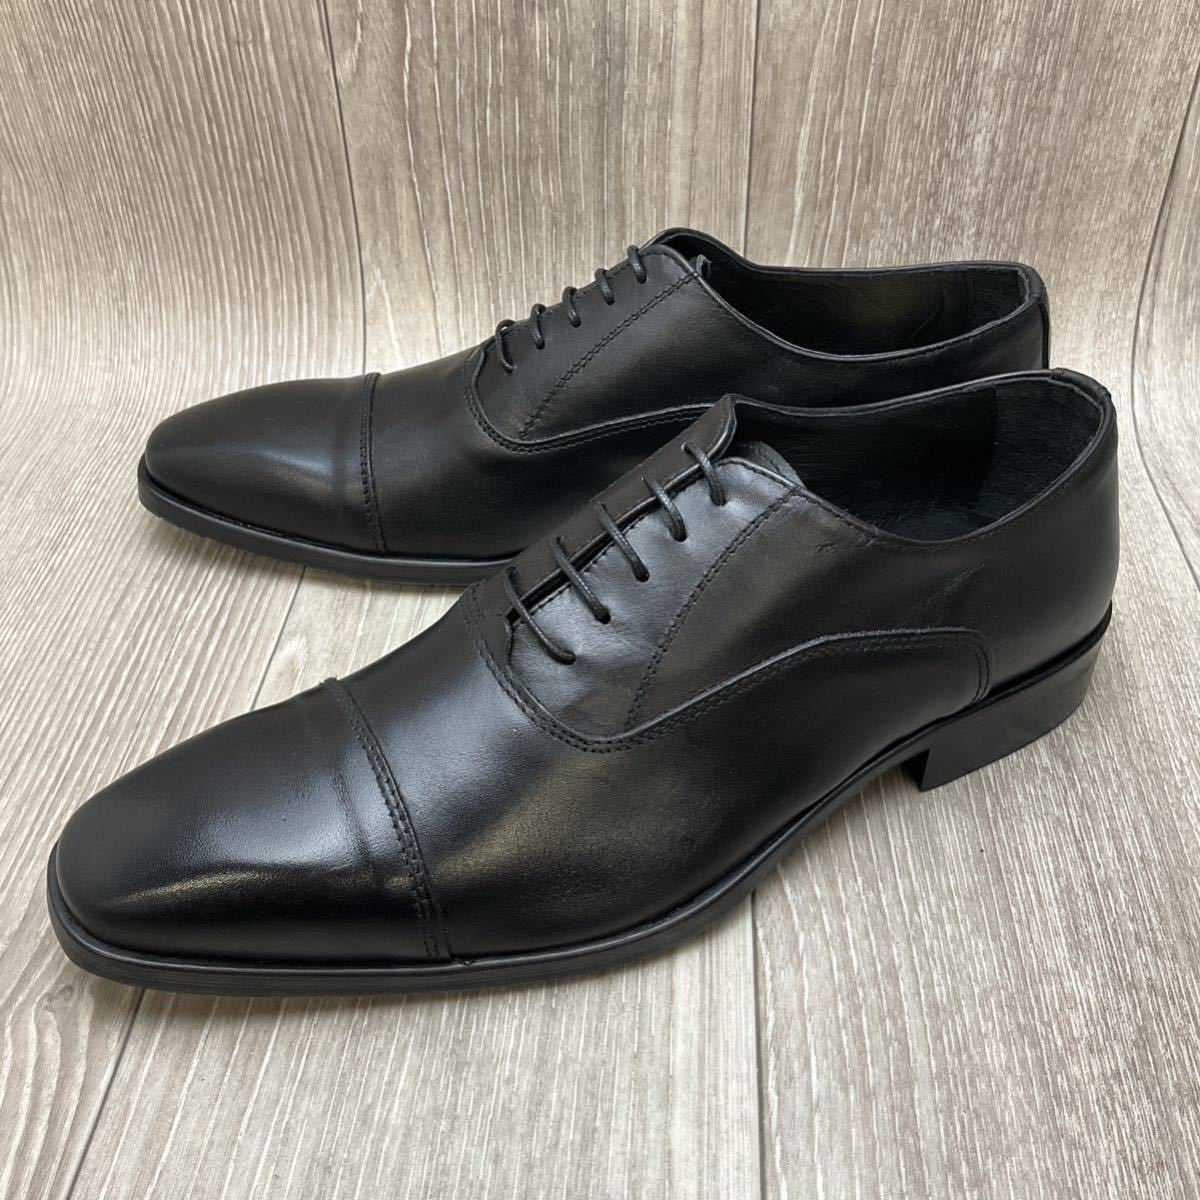 【アウトレット】Orobianco◆ストレートチップ◆ブラック◆サイズ42(26.0cm) 紳士革靴 ビジネスシューズ イタリア製ITALY 7101PNERO42_画像1